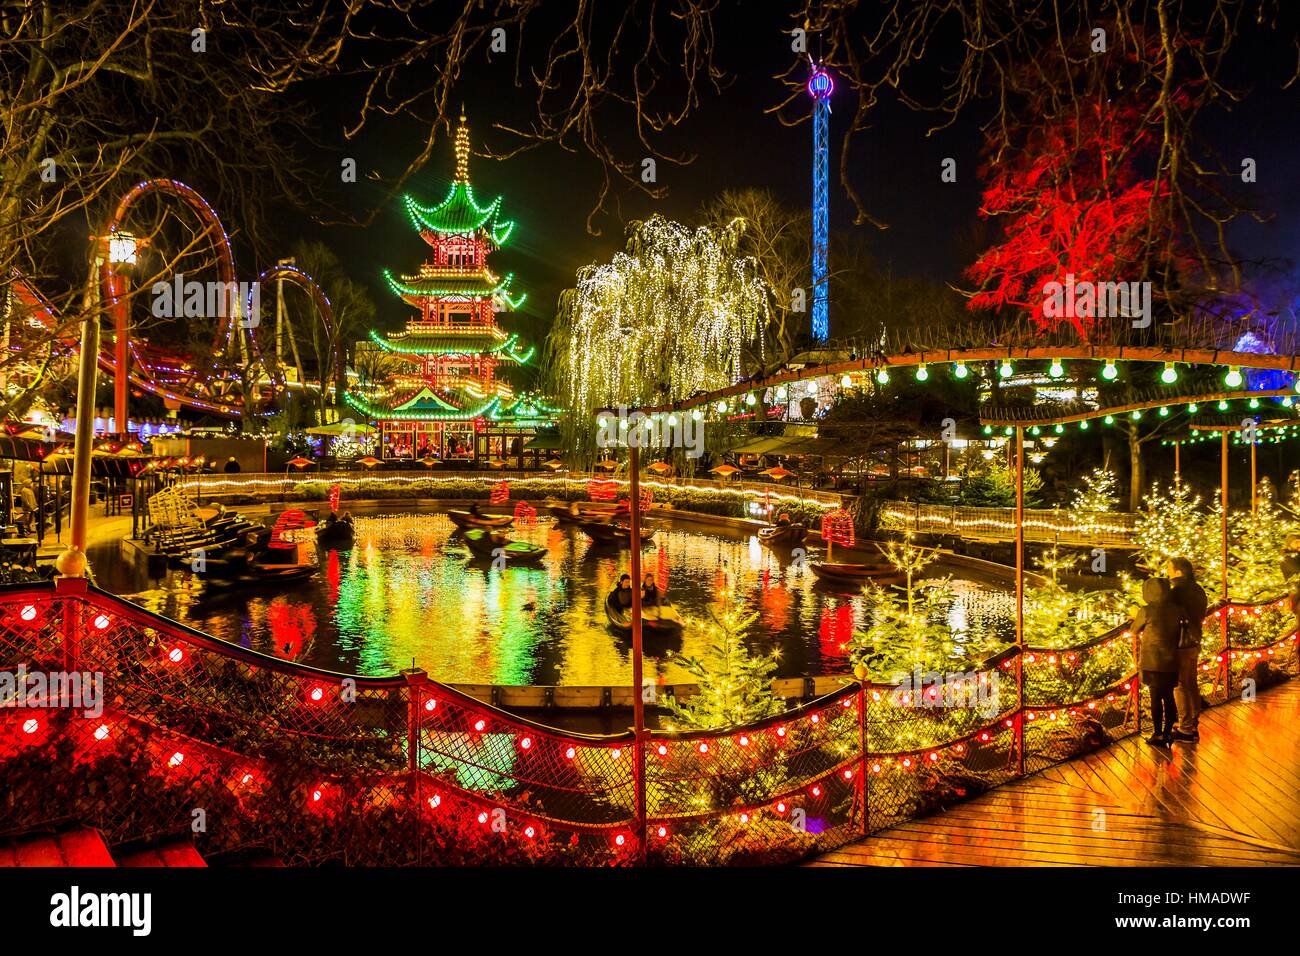 Dinamarca, Copenhague, sjelland. Navidad en los jardines de Tivoli, Dragon  Boat Lake, la pagoda y el puente sobre el lago Tivoli con adornos de navidad  Fotografía de stock - Alamy